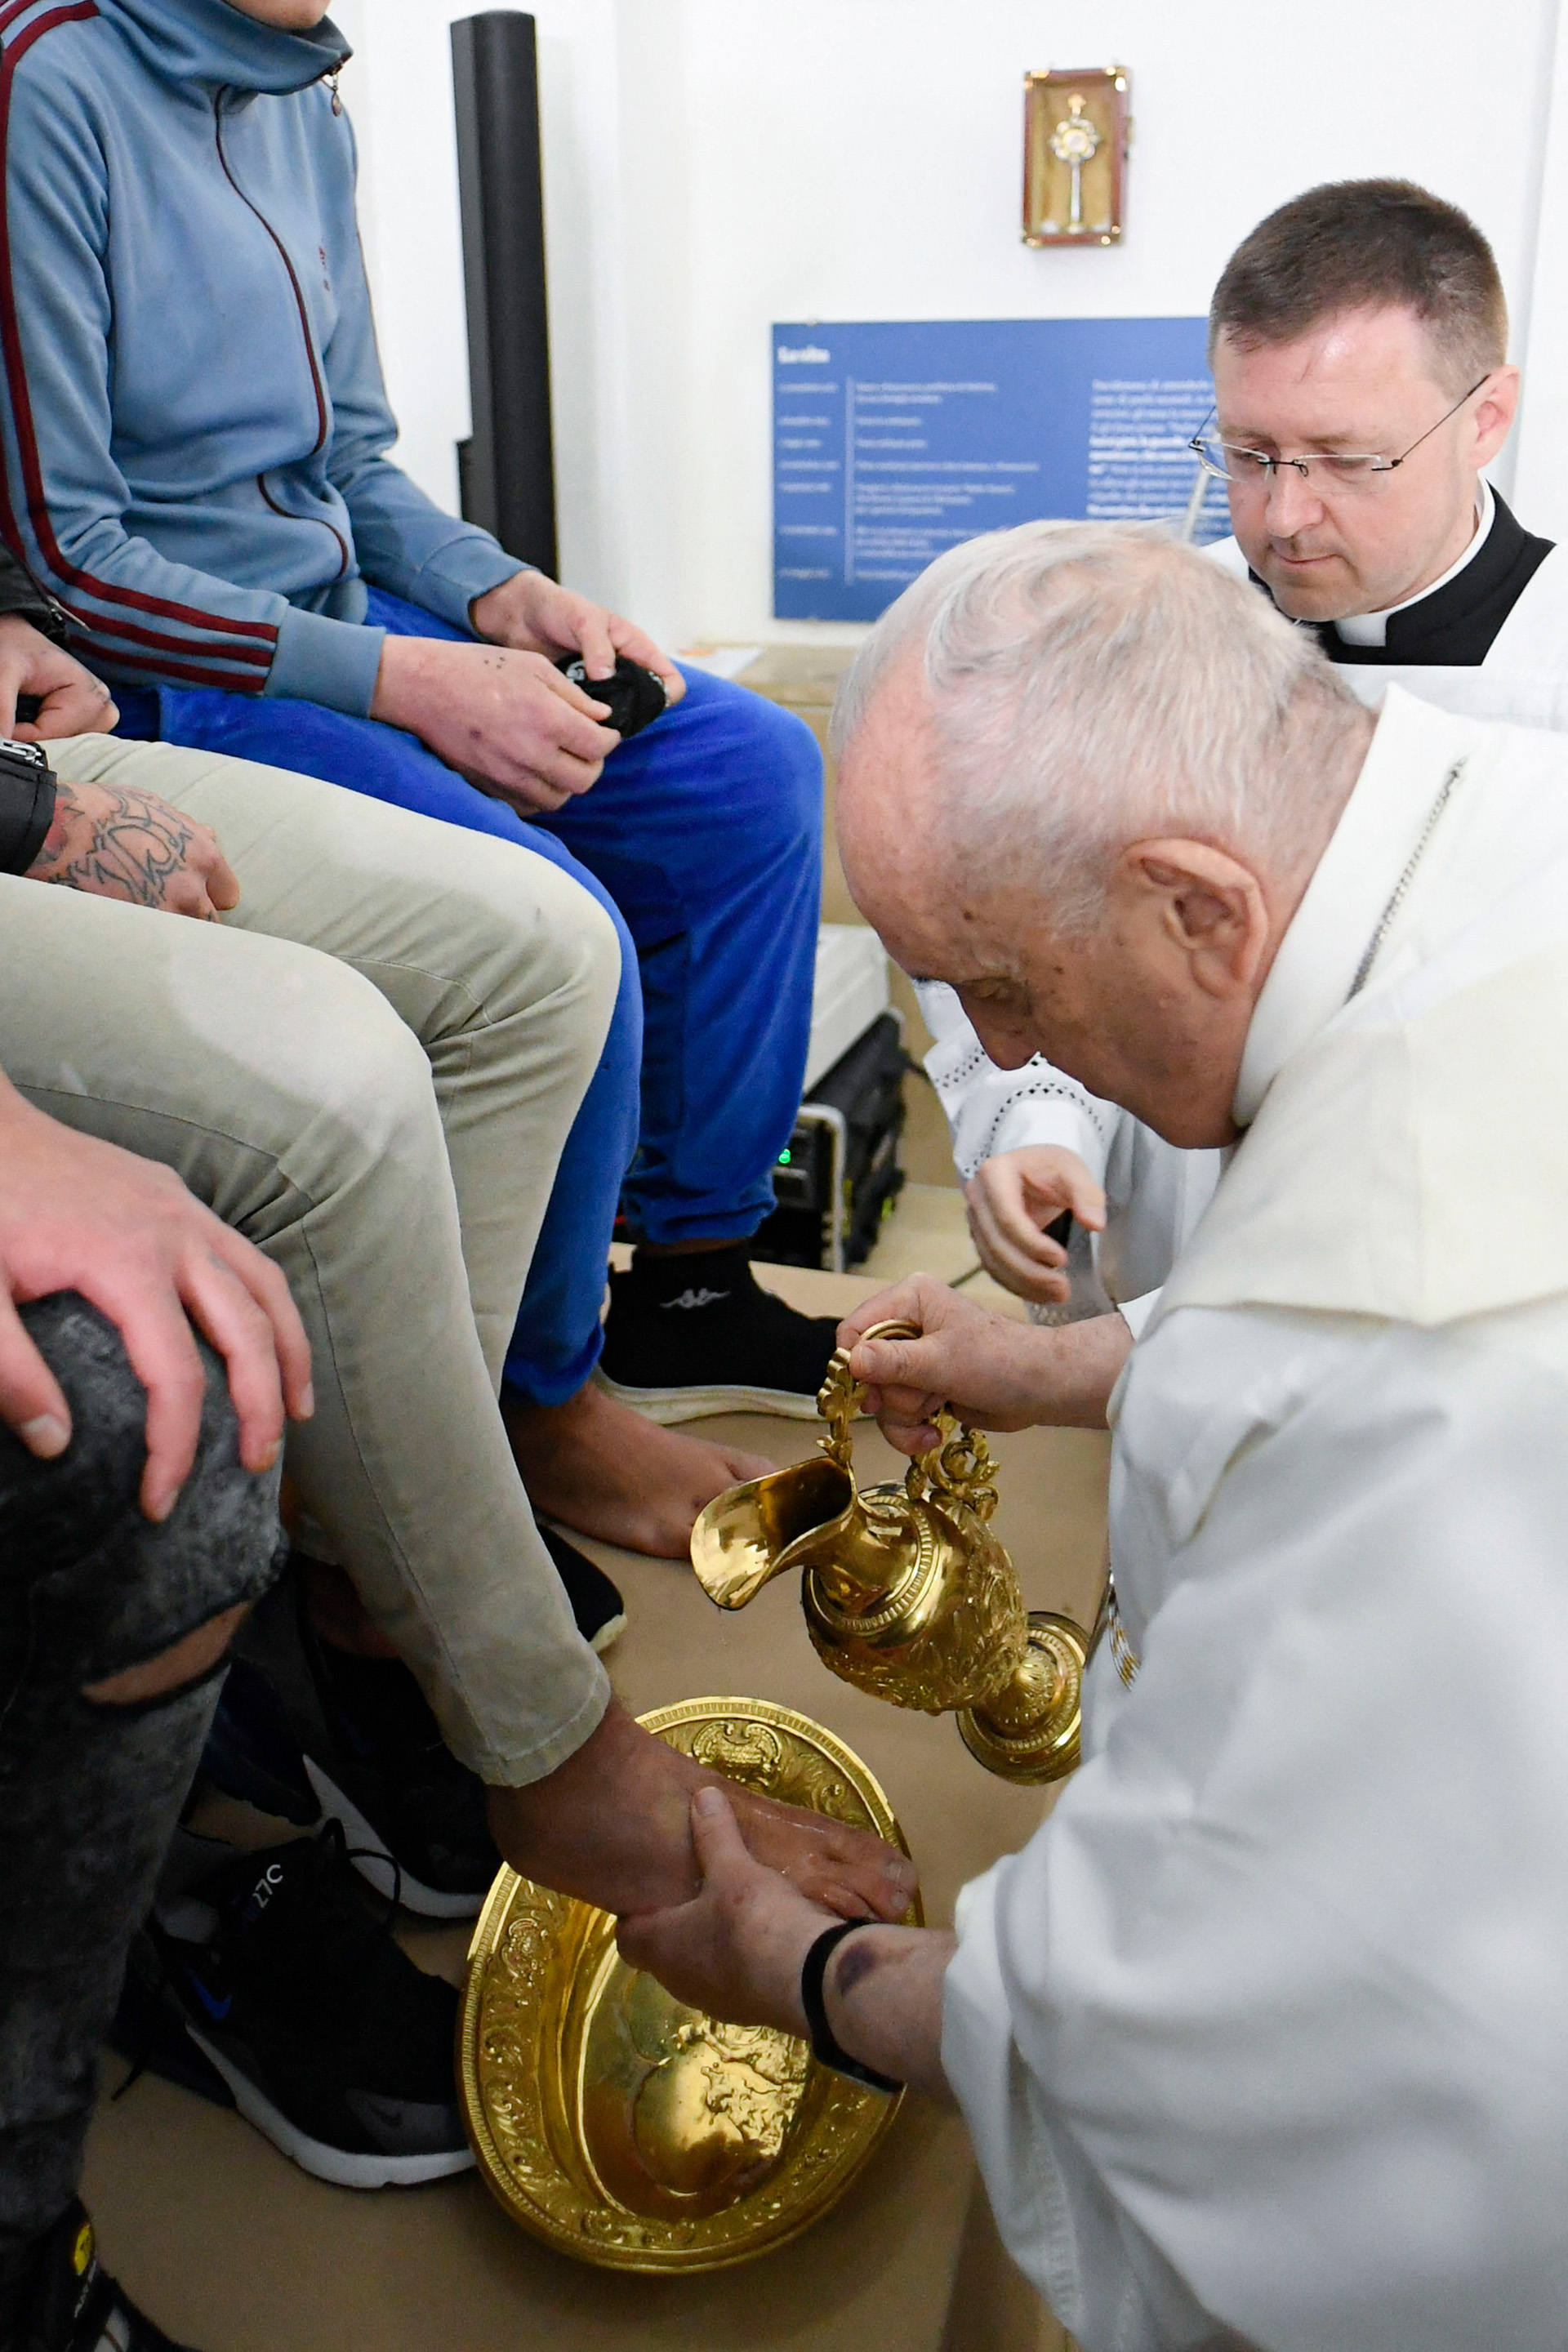 Debido a los problemas de rodilla, se dispuso una tarima para que los jóvenes estén a una altura considerable y evitar que el Papa tuviera que arrodillarse para realizar el rito